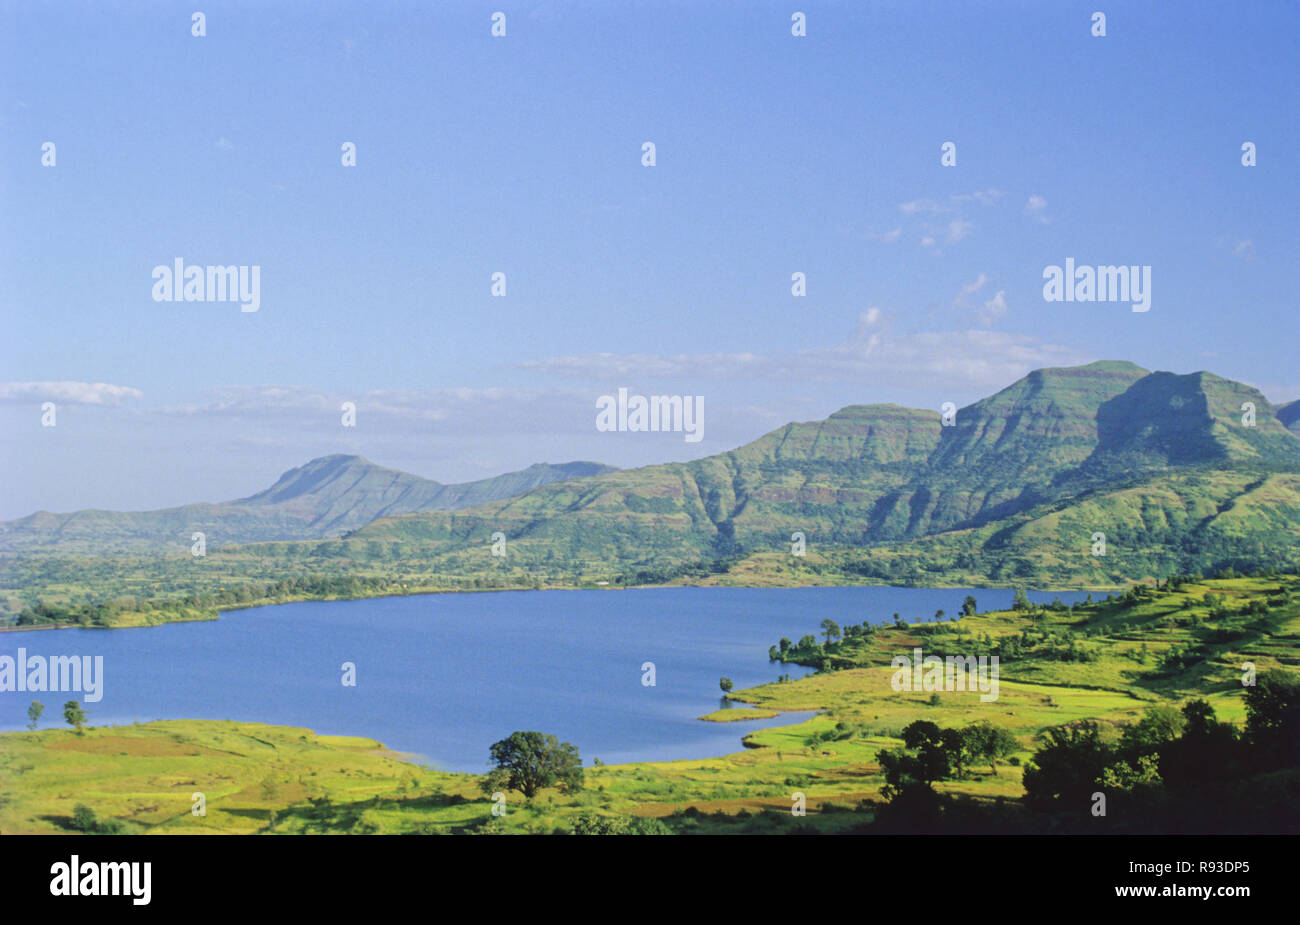 Landscapes, Bhandara, Maharashtra, India Stock Photo